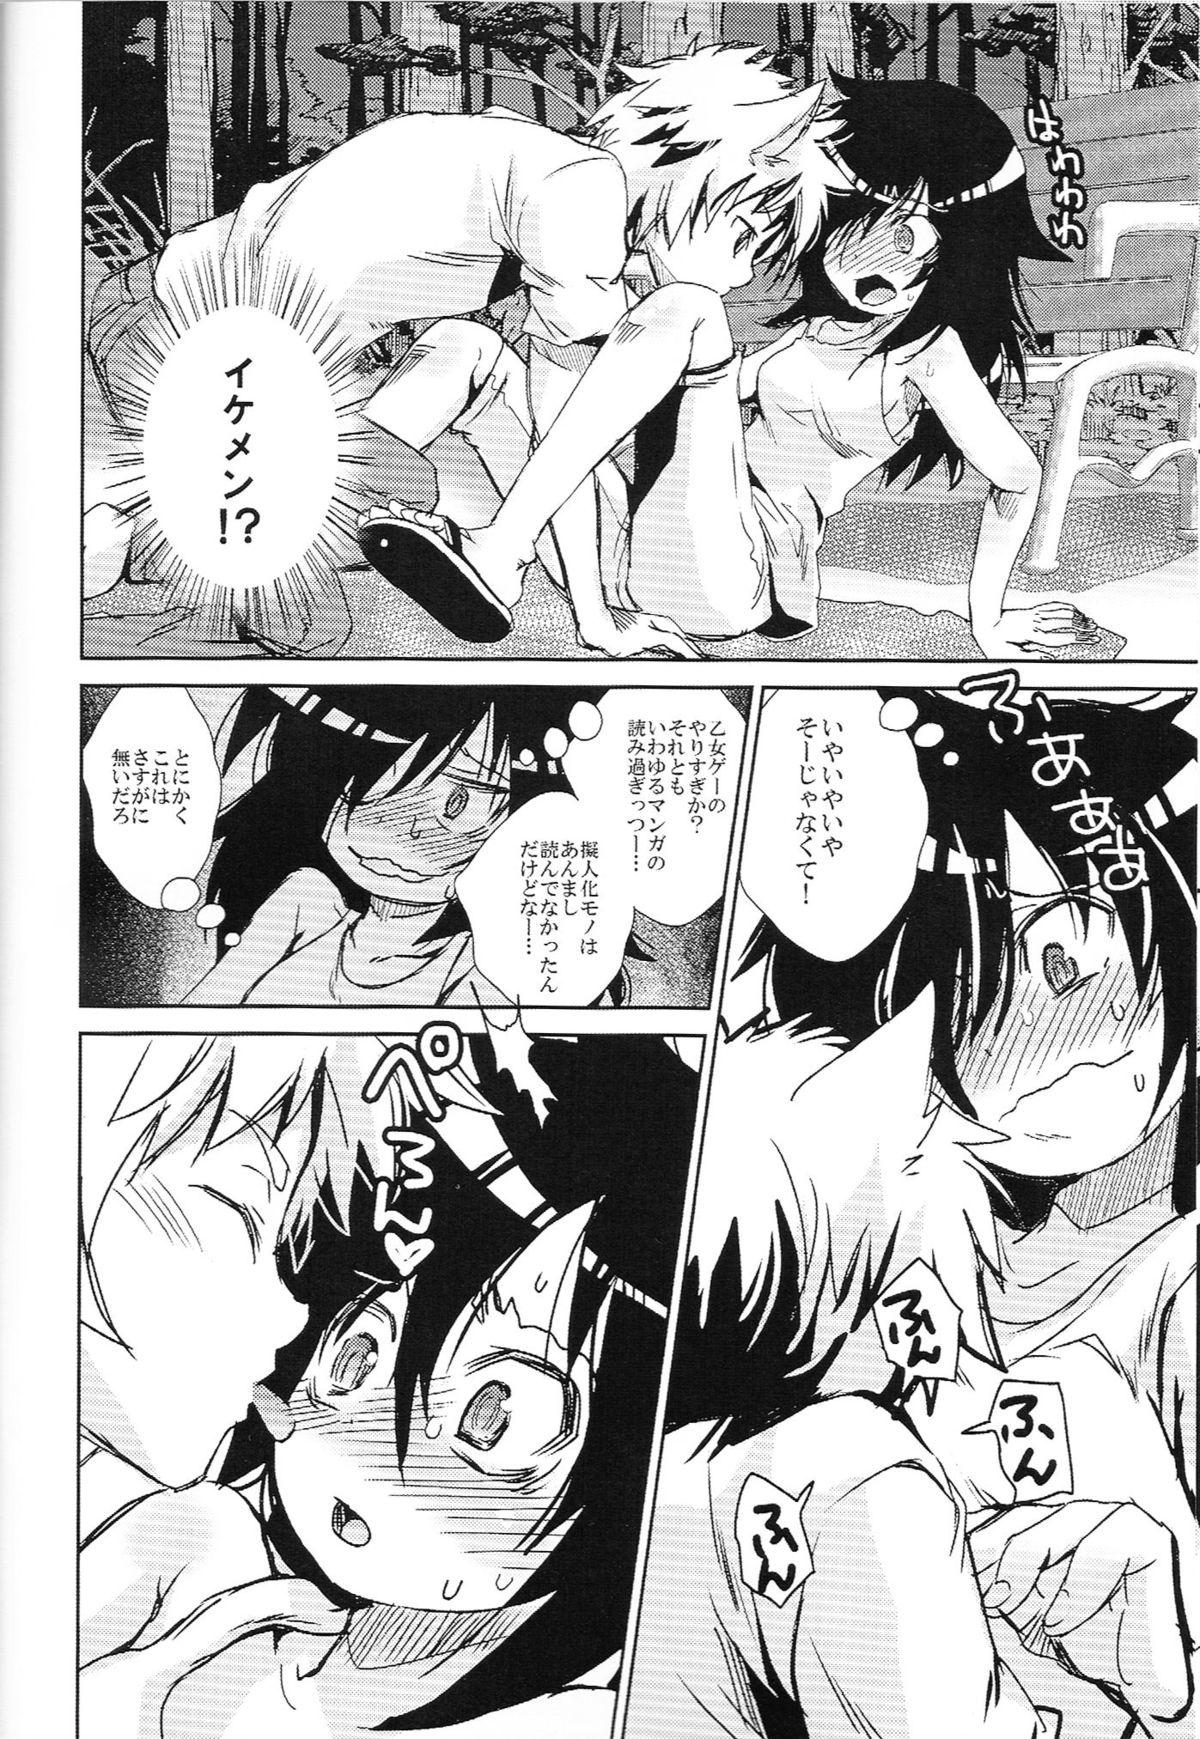 Cute Watashi ga Moteru noha Neko ni dake! - Its not my fault that im not popular Gay Public - Page 5